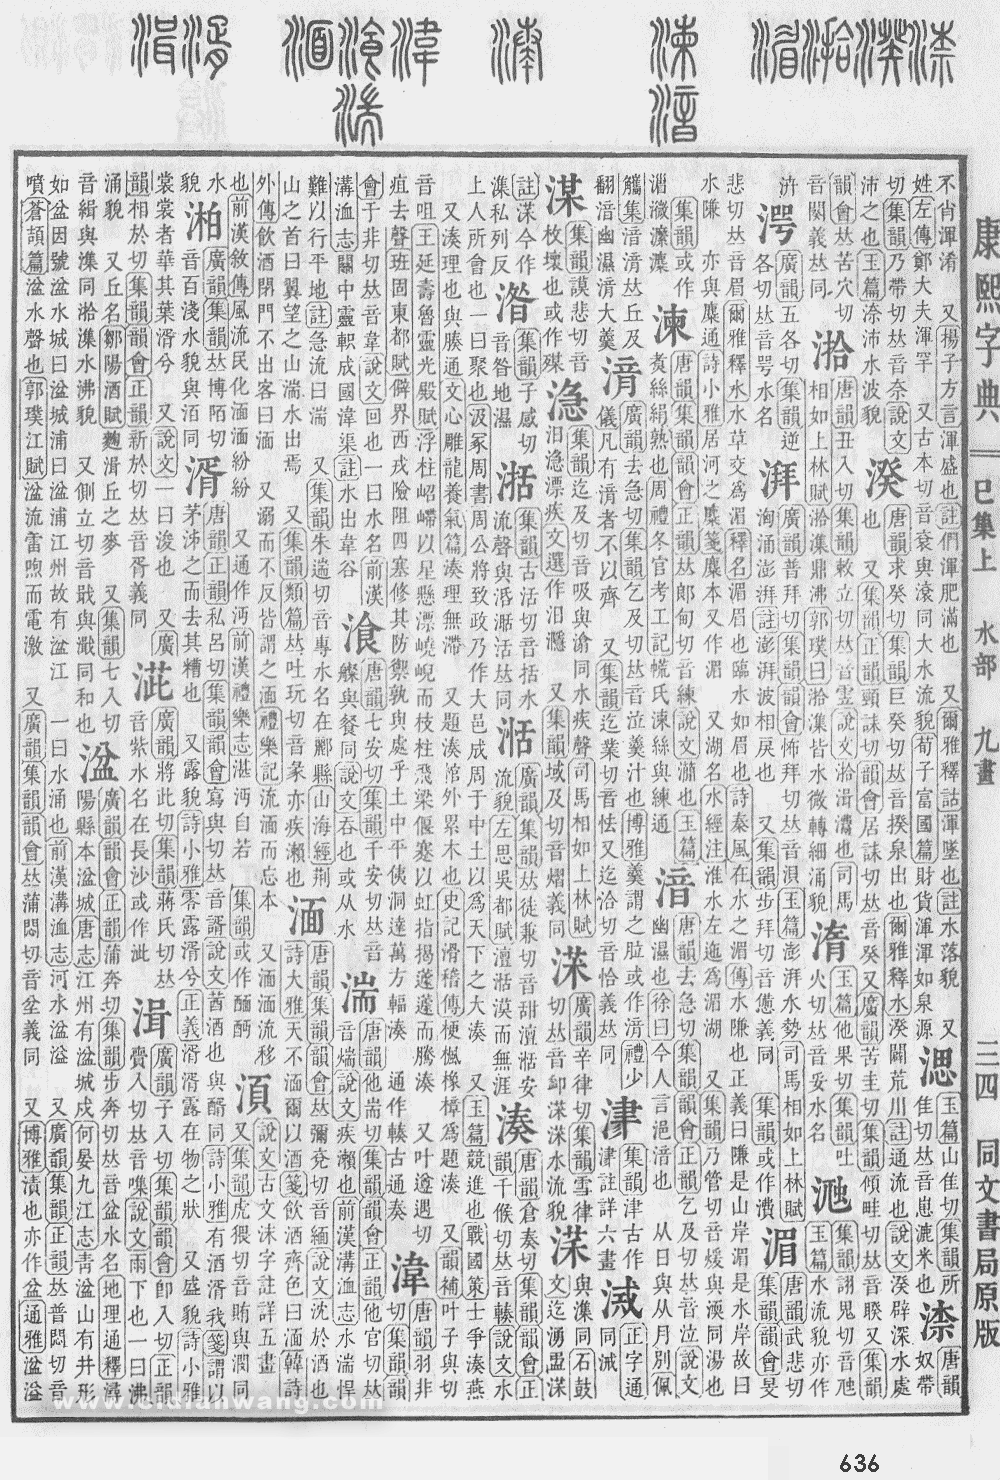 康熙字典掃描版第636頁